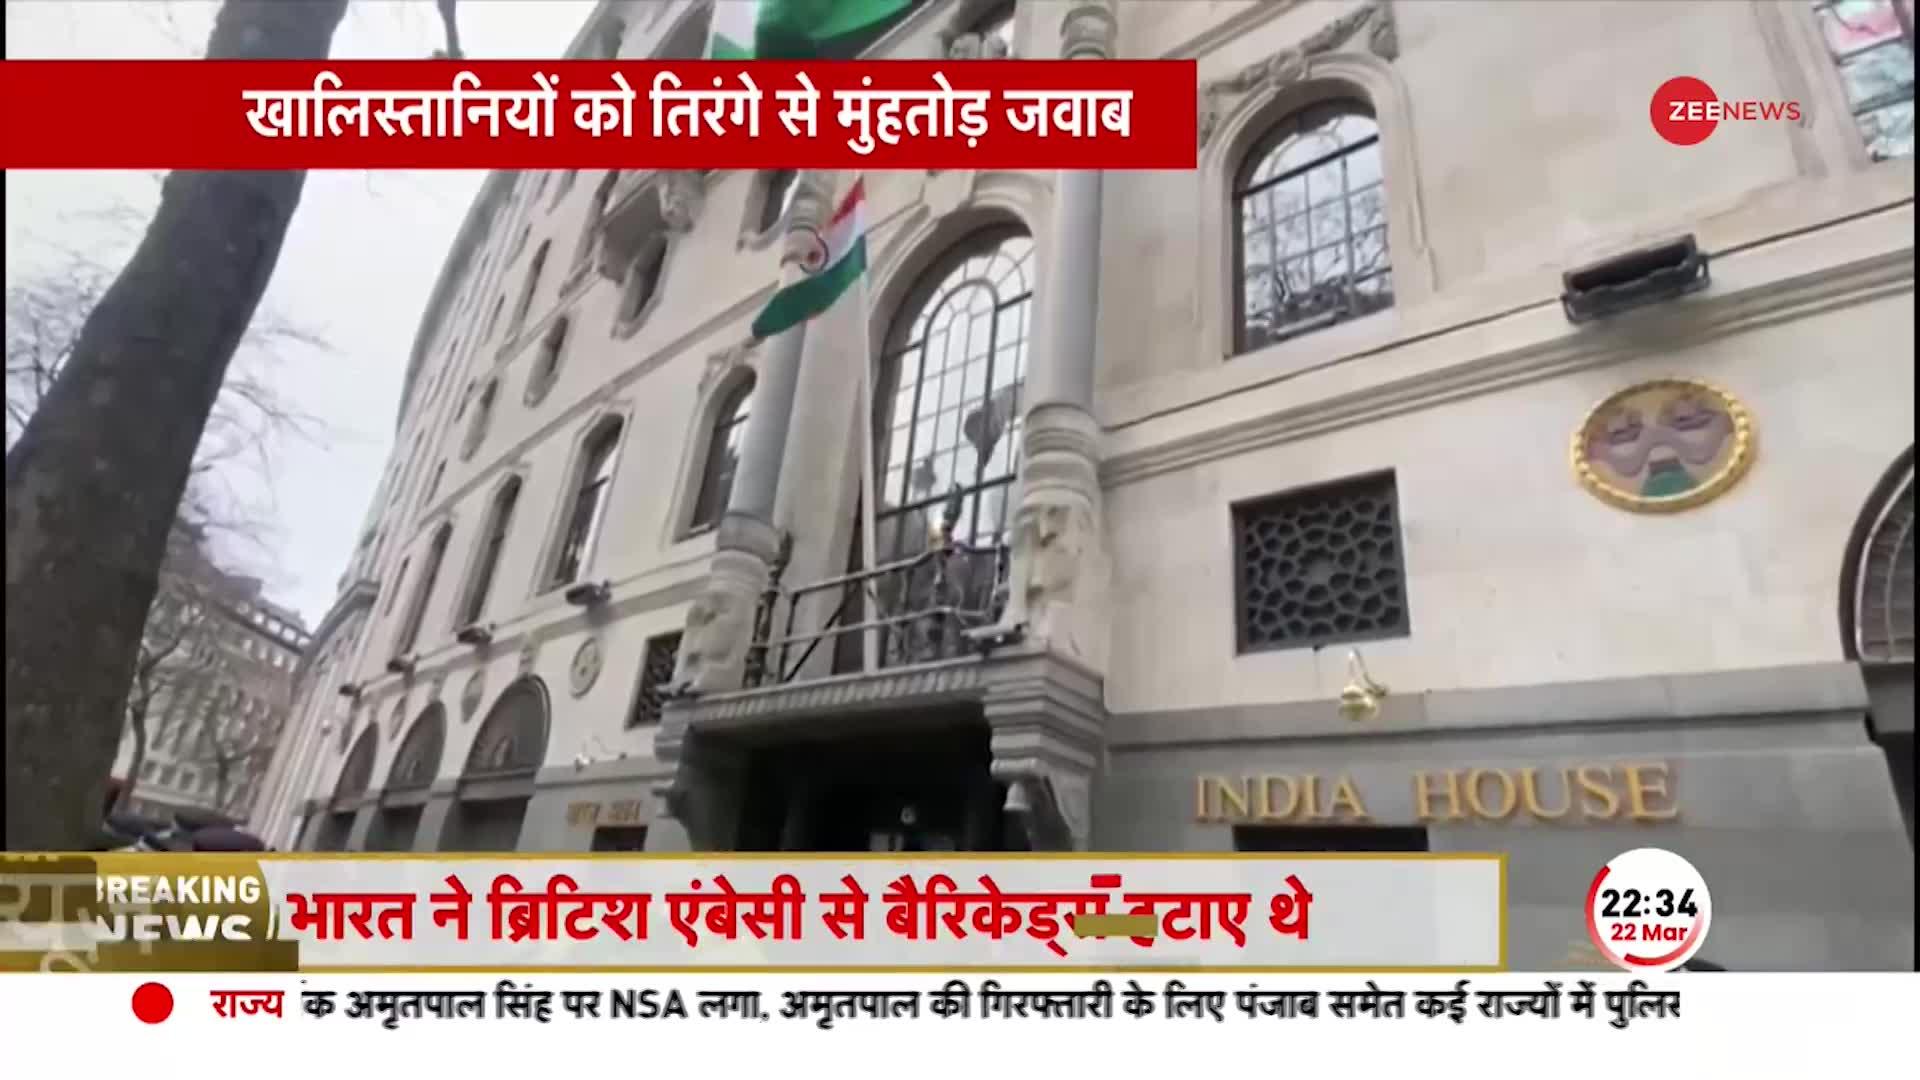 भारत ने दिल्ली से लंदन को दिया करारा जवाब, ब्रिटिश दूतावास के बाहर से हटाए बैरिकेड